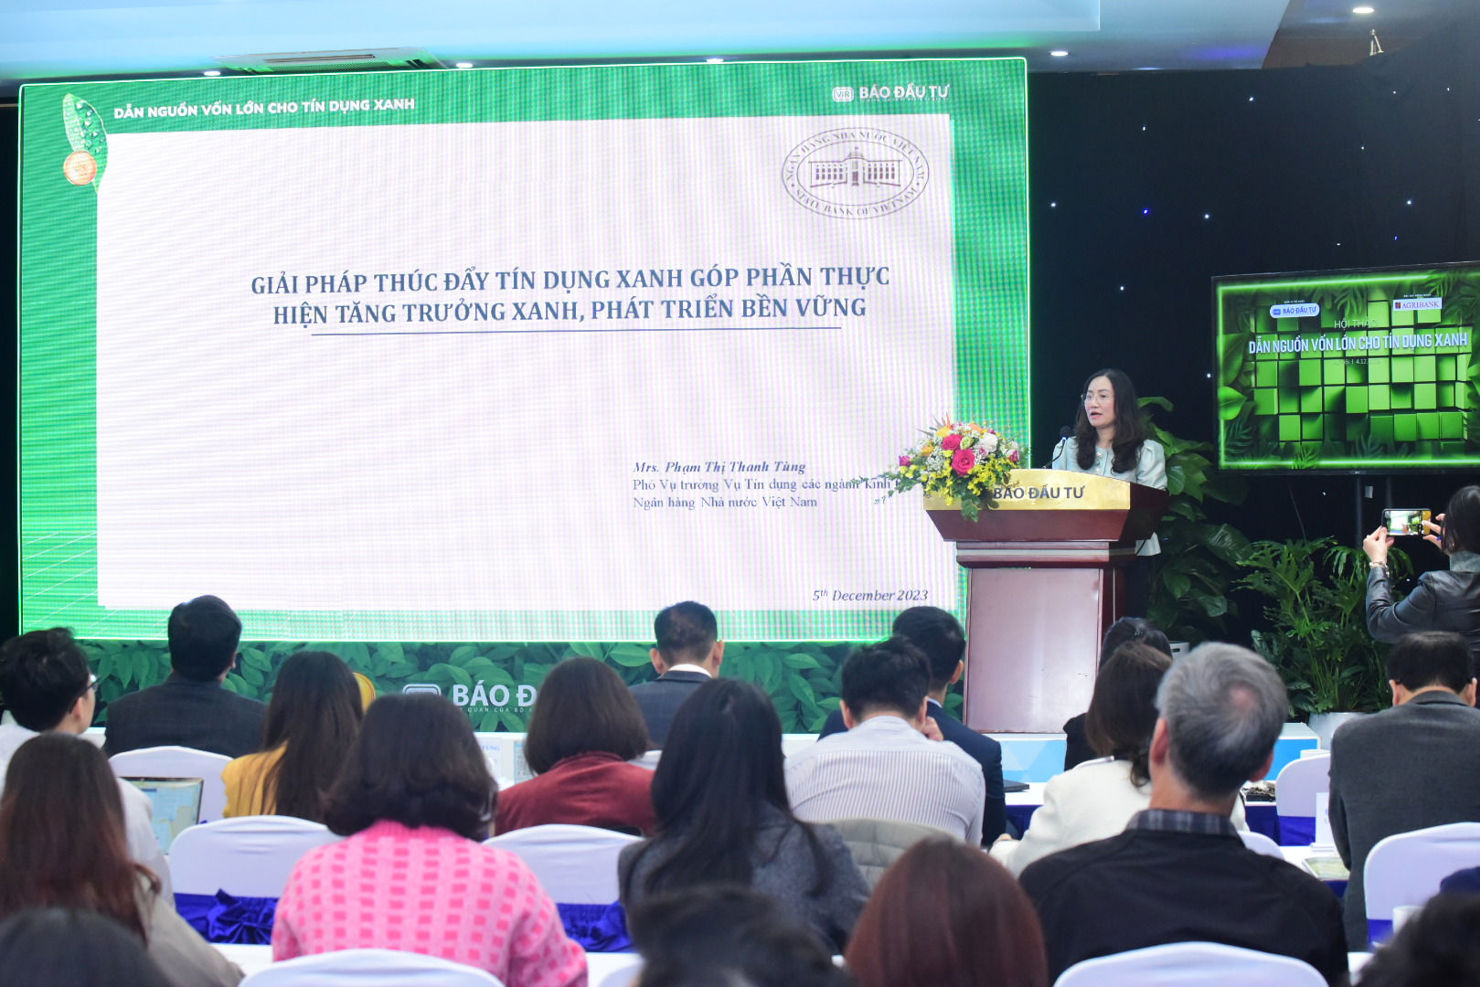 Bà Phạm Thị Thanh Tùng - Phó Vụ trưởng, Vụ Tín dụng các ngành kinh tế chia sẻ giải pháp thúc đẩy tín dụng xanh.